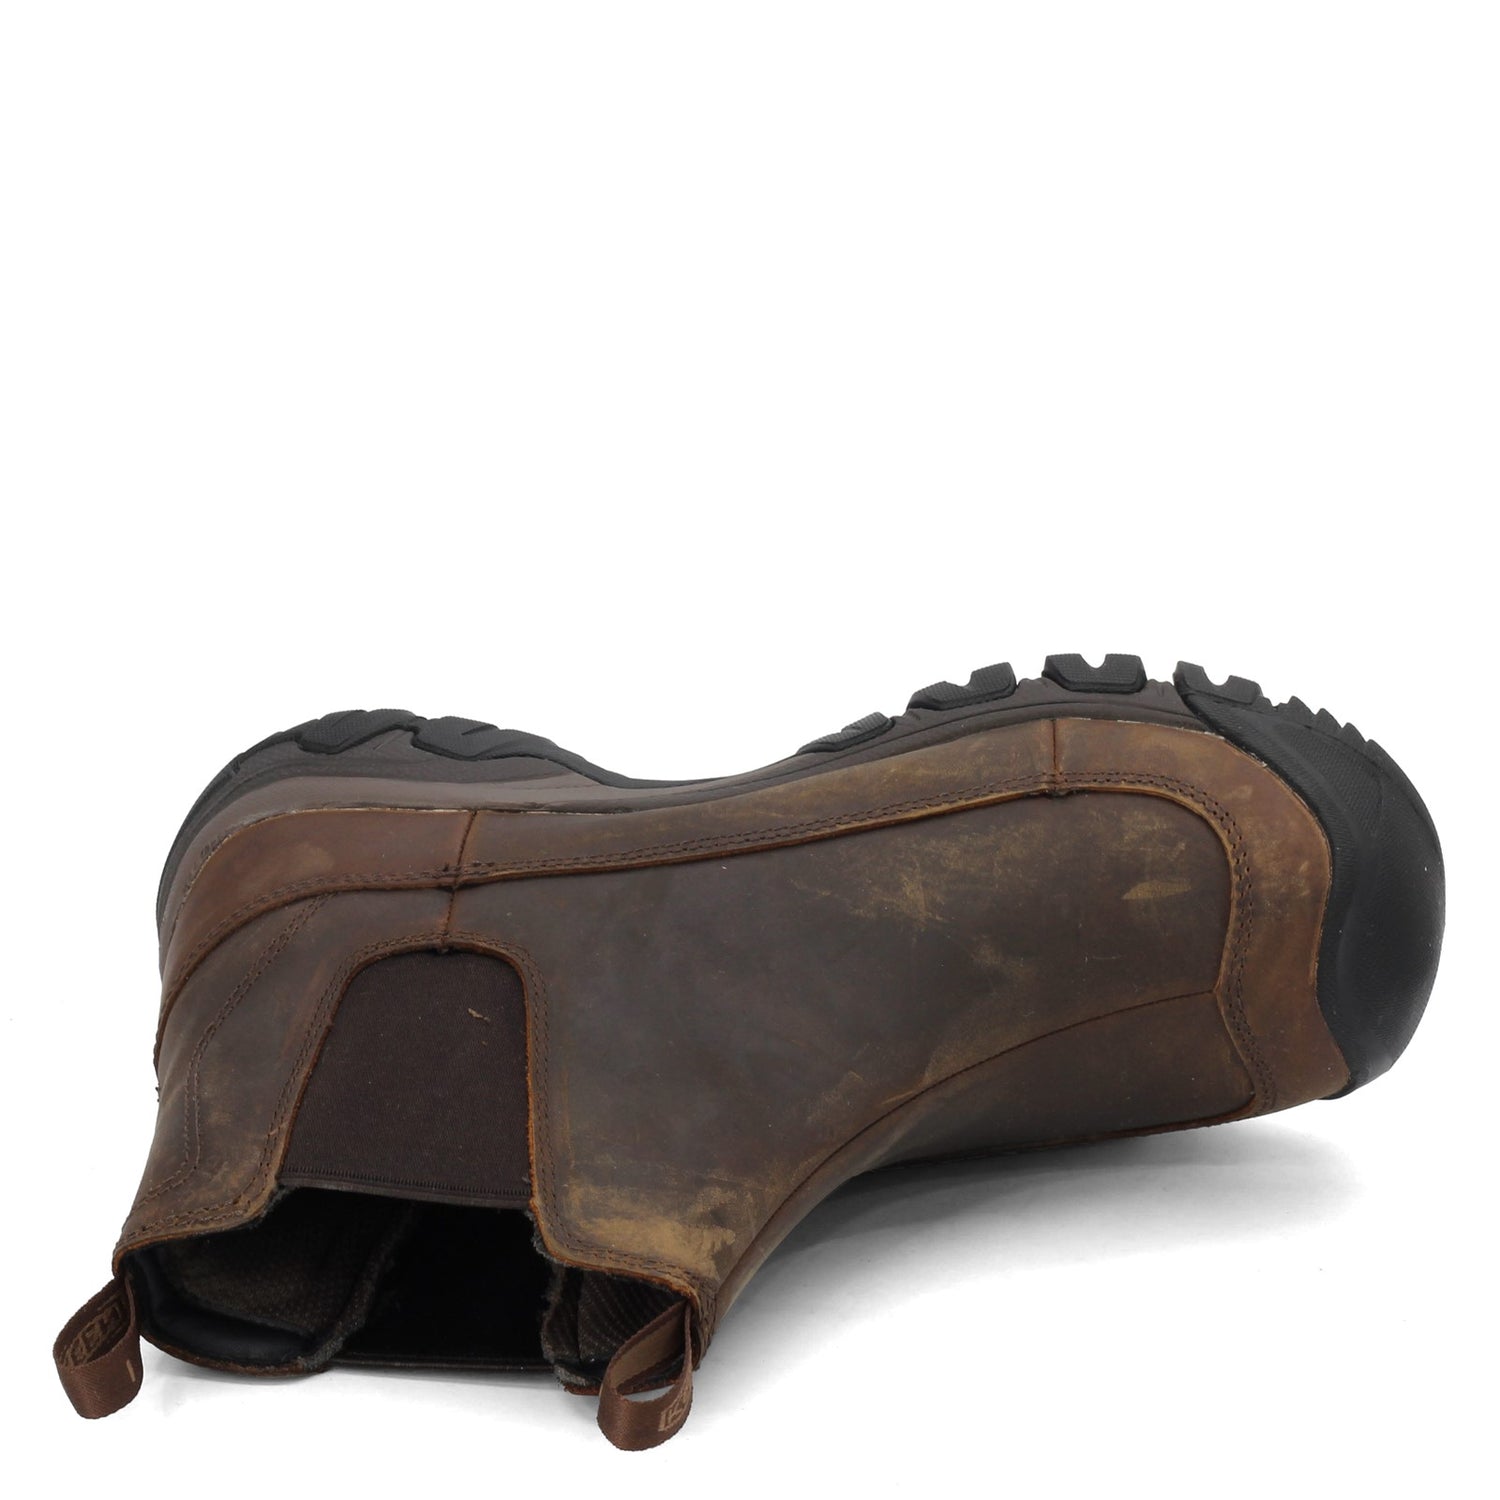 Peltz Shoes  Men's Keen Anchorage III Waterproof Boot Dark Earth/Mulch 1017790